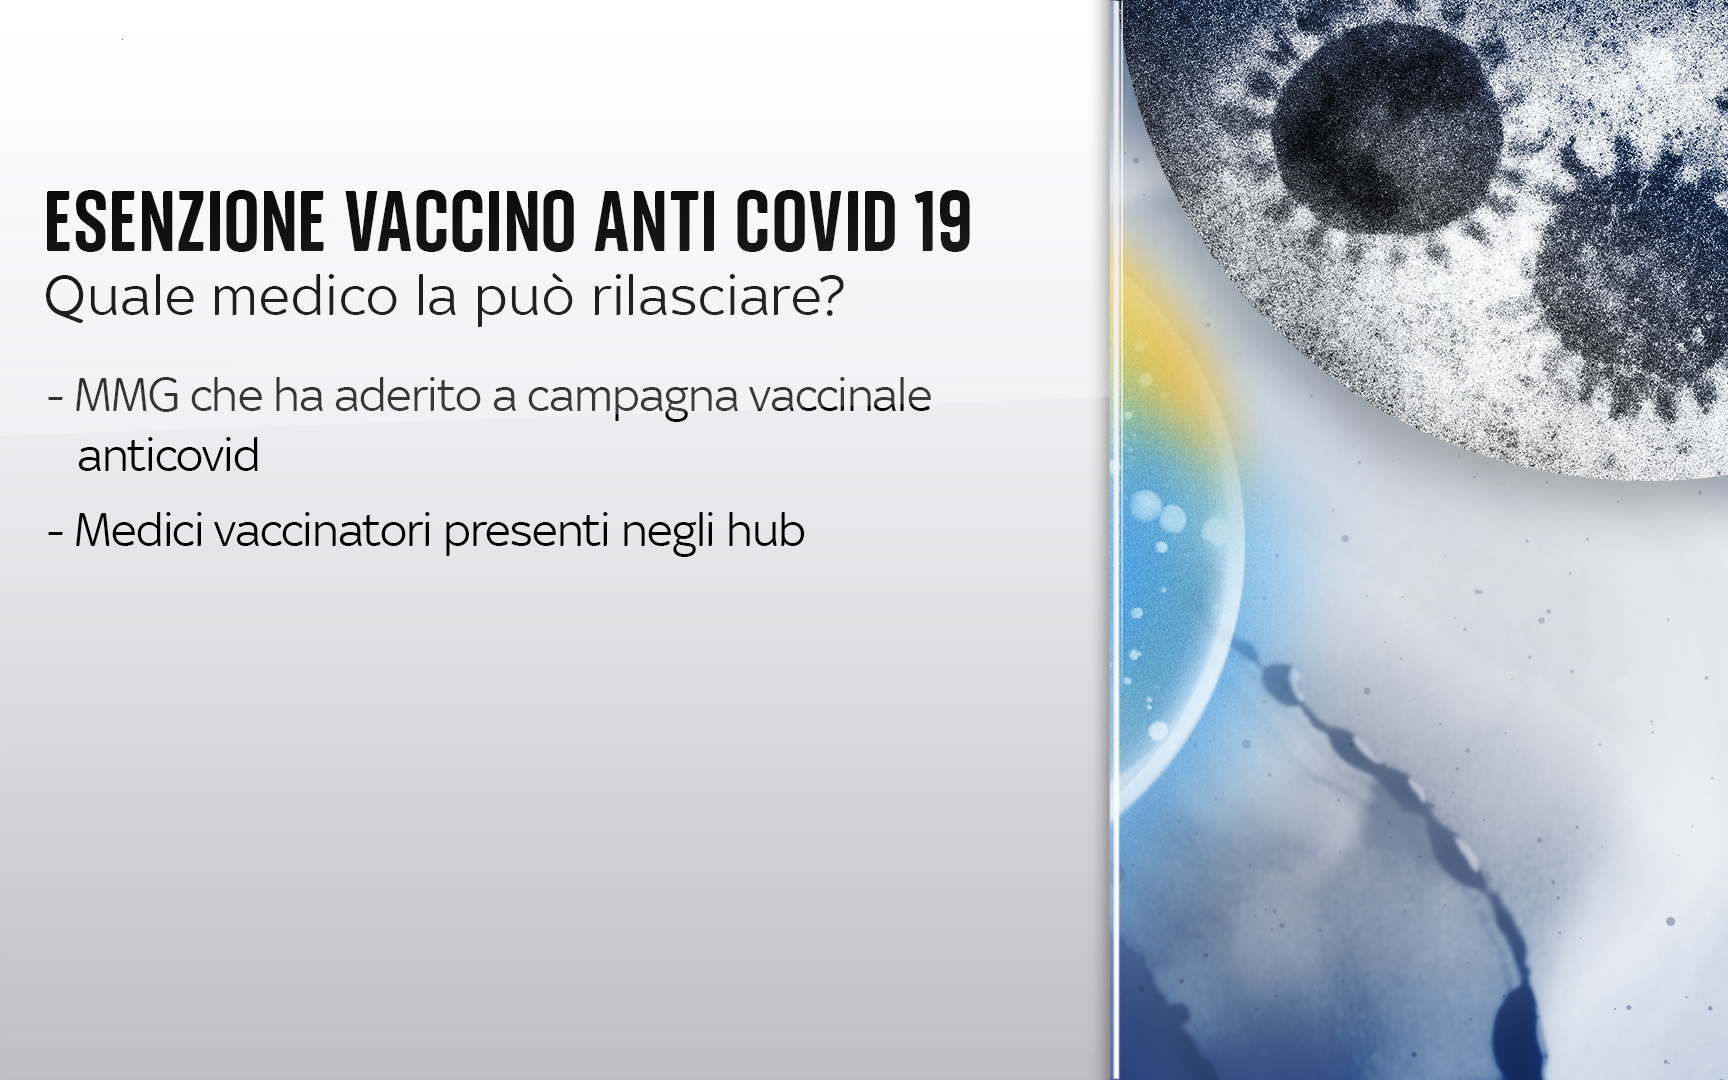 Esenzione vaccino (tratta dal sito tg24.sky.it